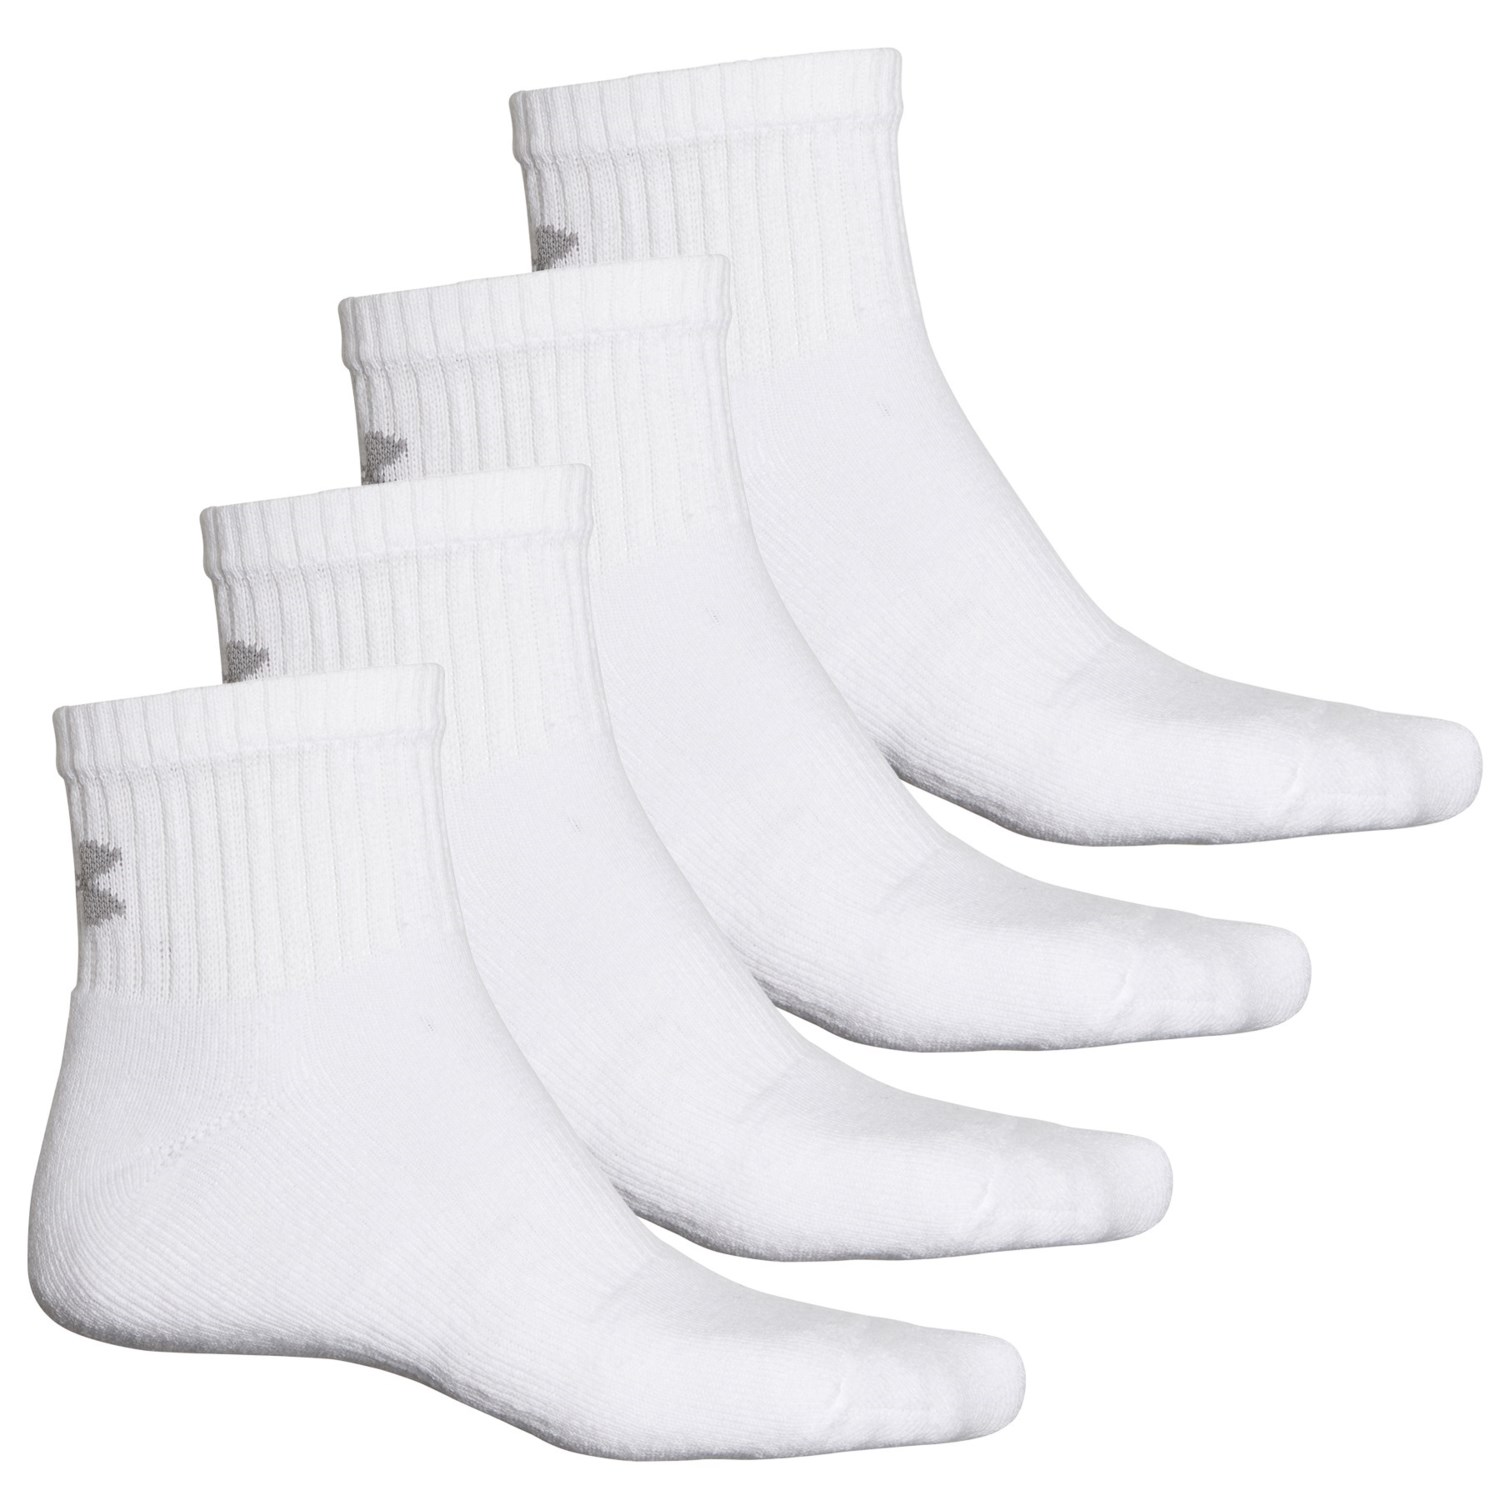 Under Armour AllSeasonGear Socks - 4-Pack, Ankle (For Men)